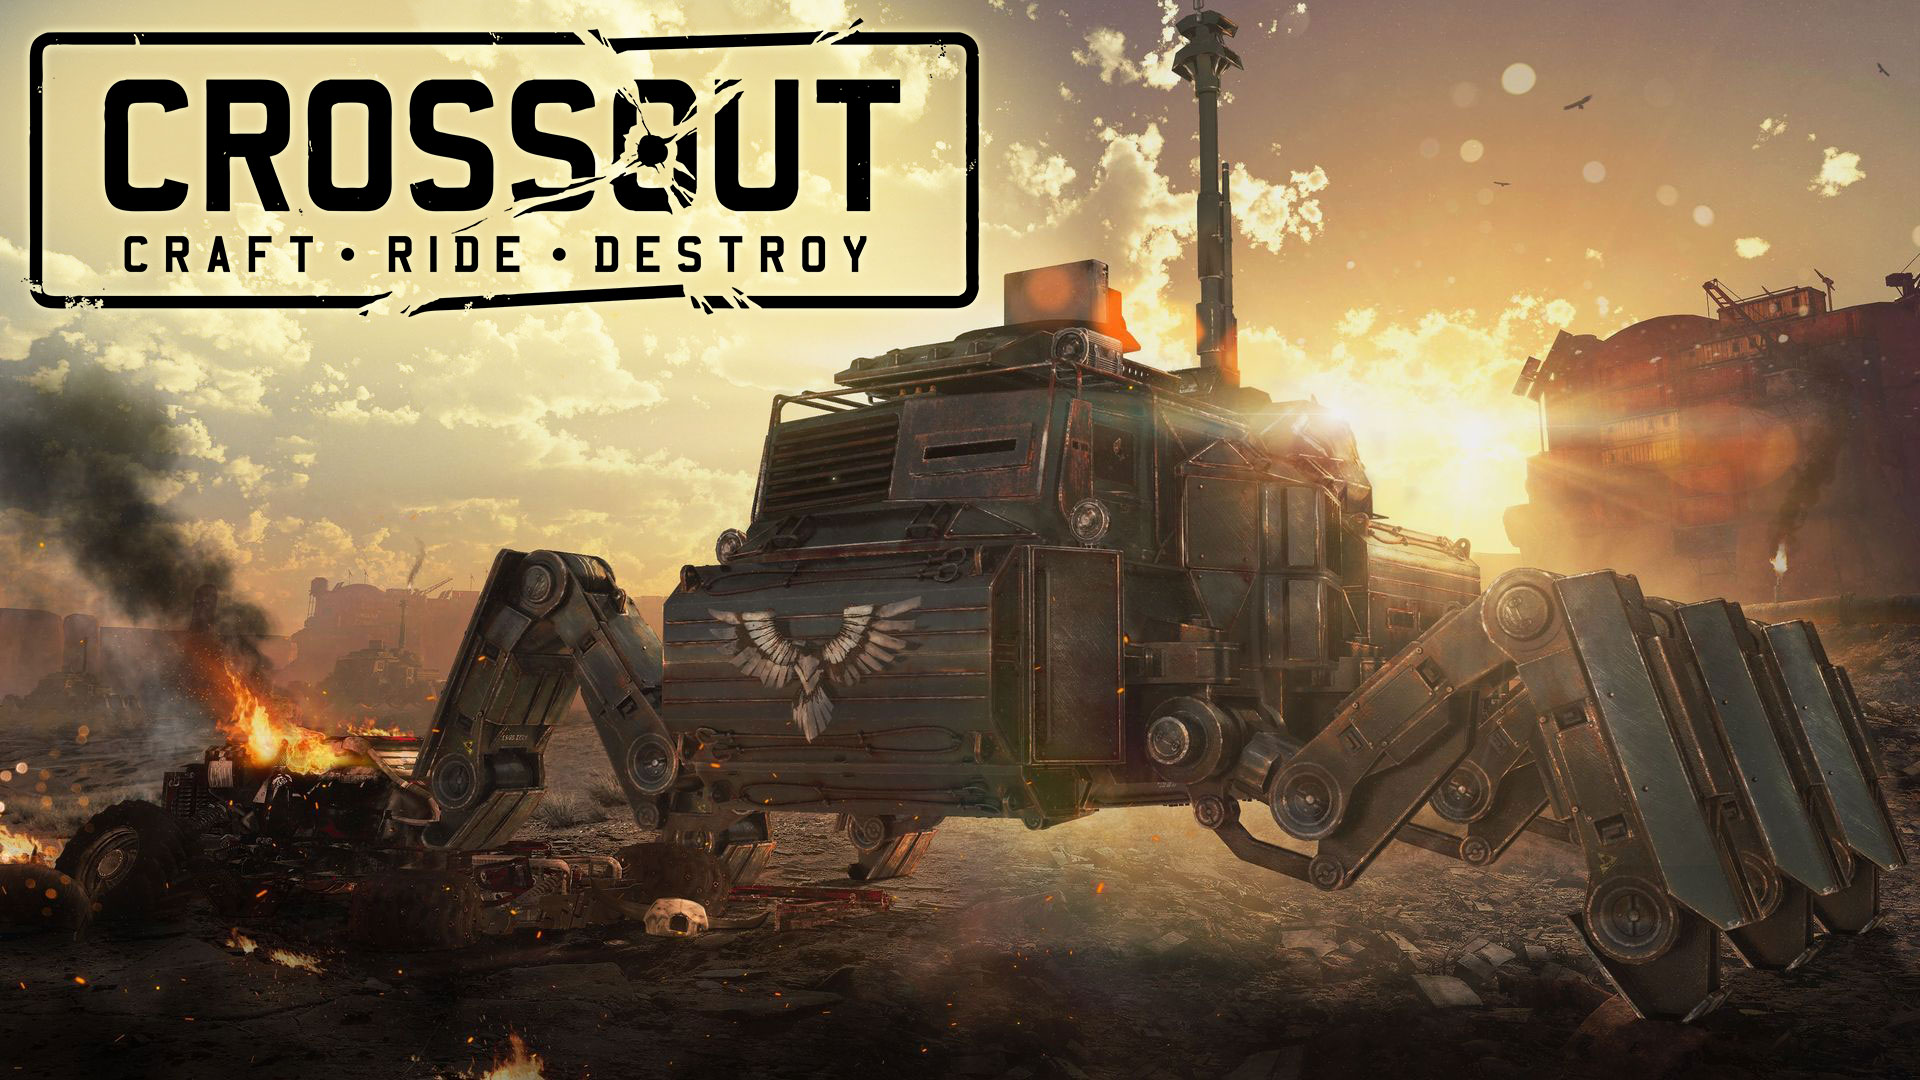 Crossout – premiera gry na PC, PS4 oraz XO już dziś1920 x 1080